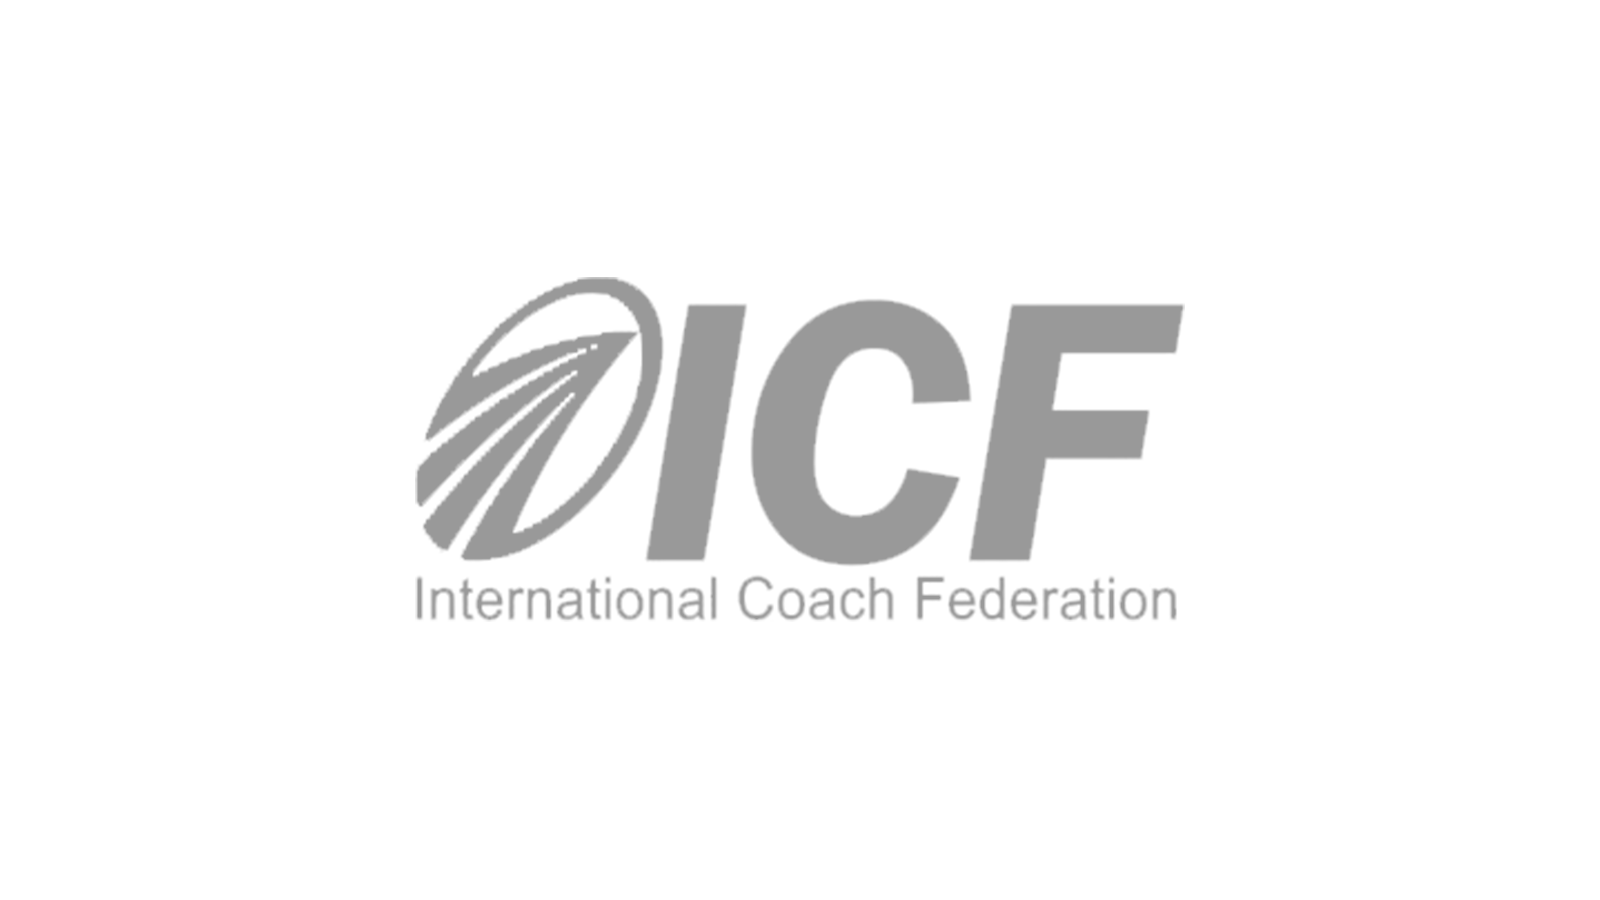 icf-logo.png